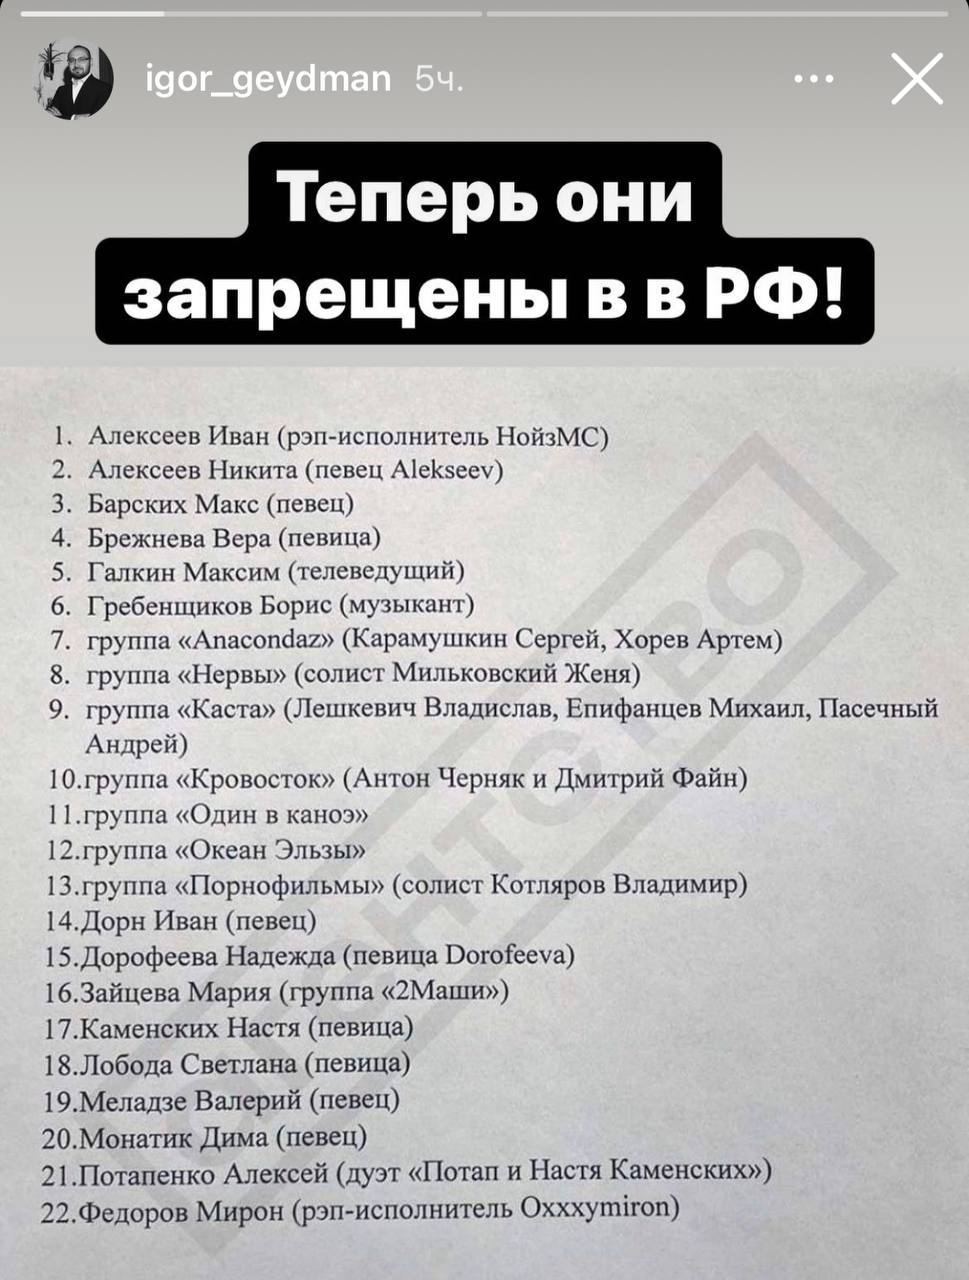 Обнародован список звезд, которые отныне запрещены в России – фото